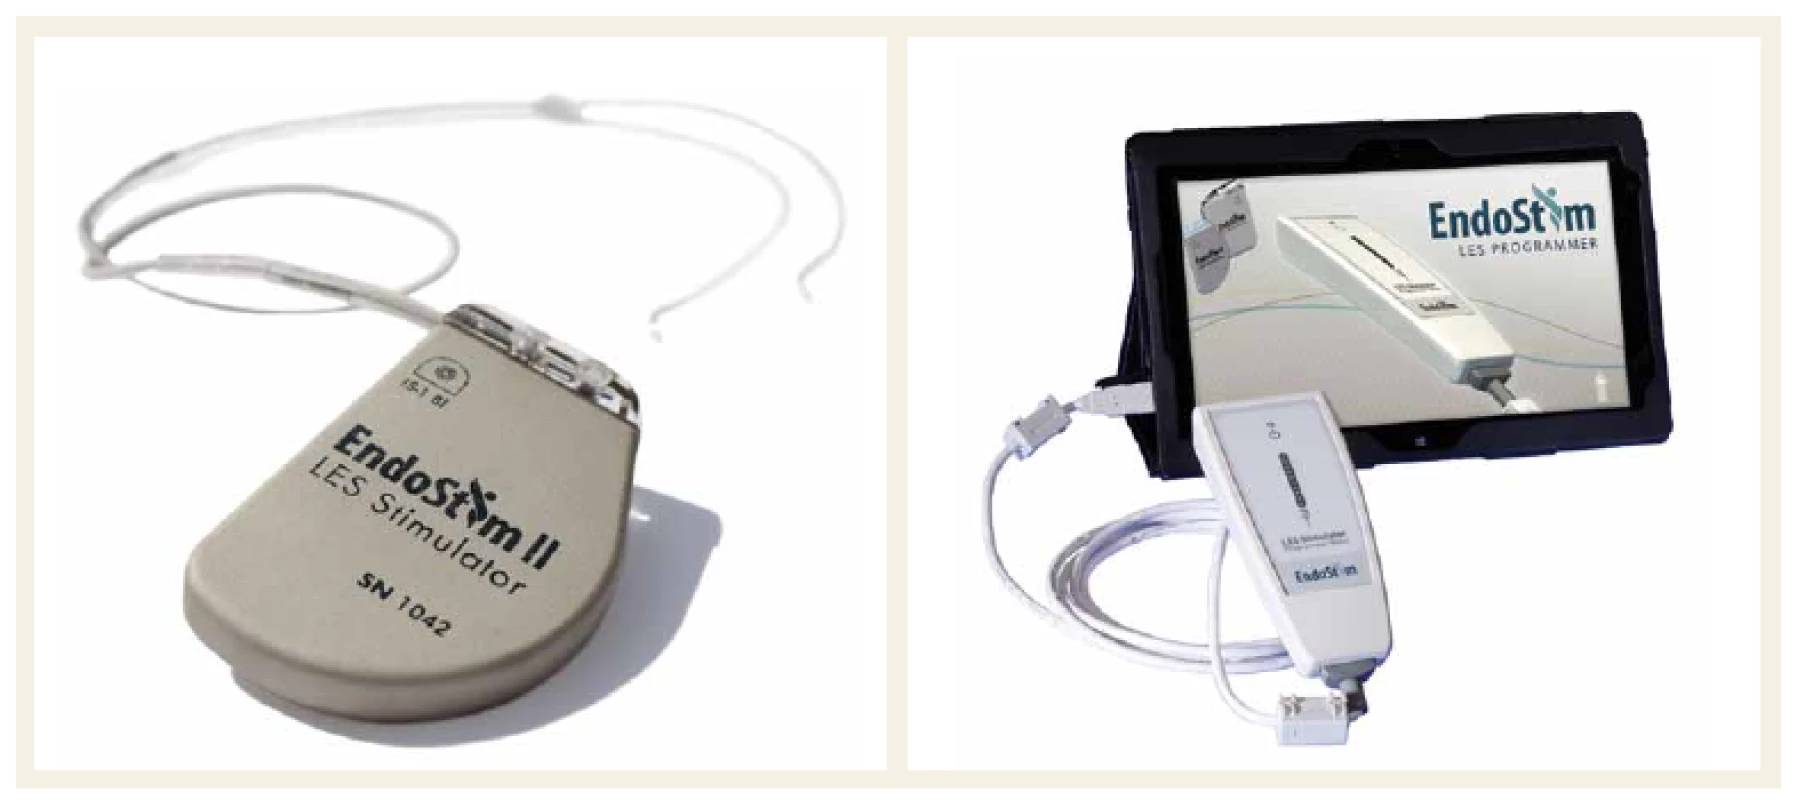 EndoStim – programovatelný implantabilní pulzní generátor, bipolární stimulační elektrody a externí bezdrátový programátor.
Fig. 1. EndoStim – a programmable implantable pulse generator, a bipolar stimulation lead with two stitch electrodes, and an external wireless programmer.